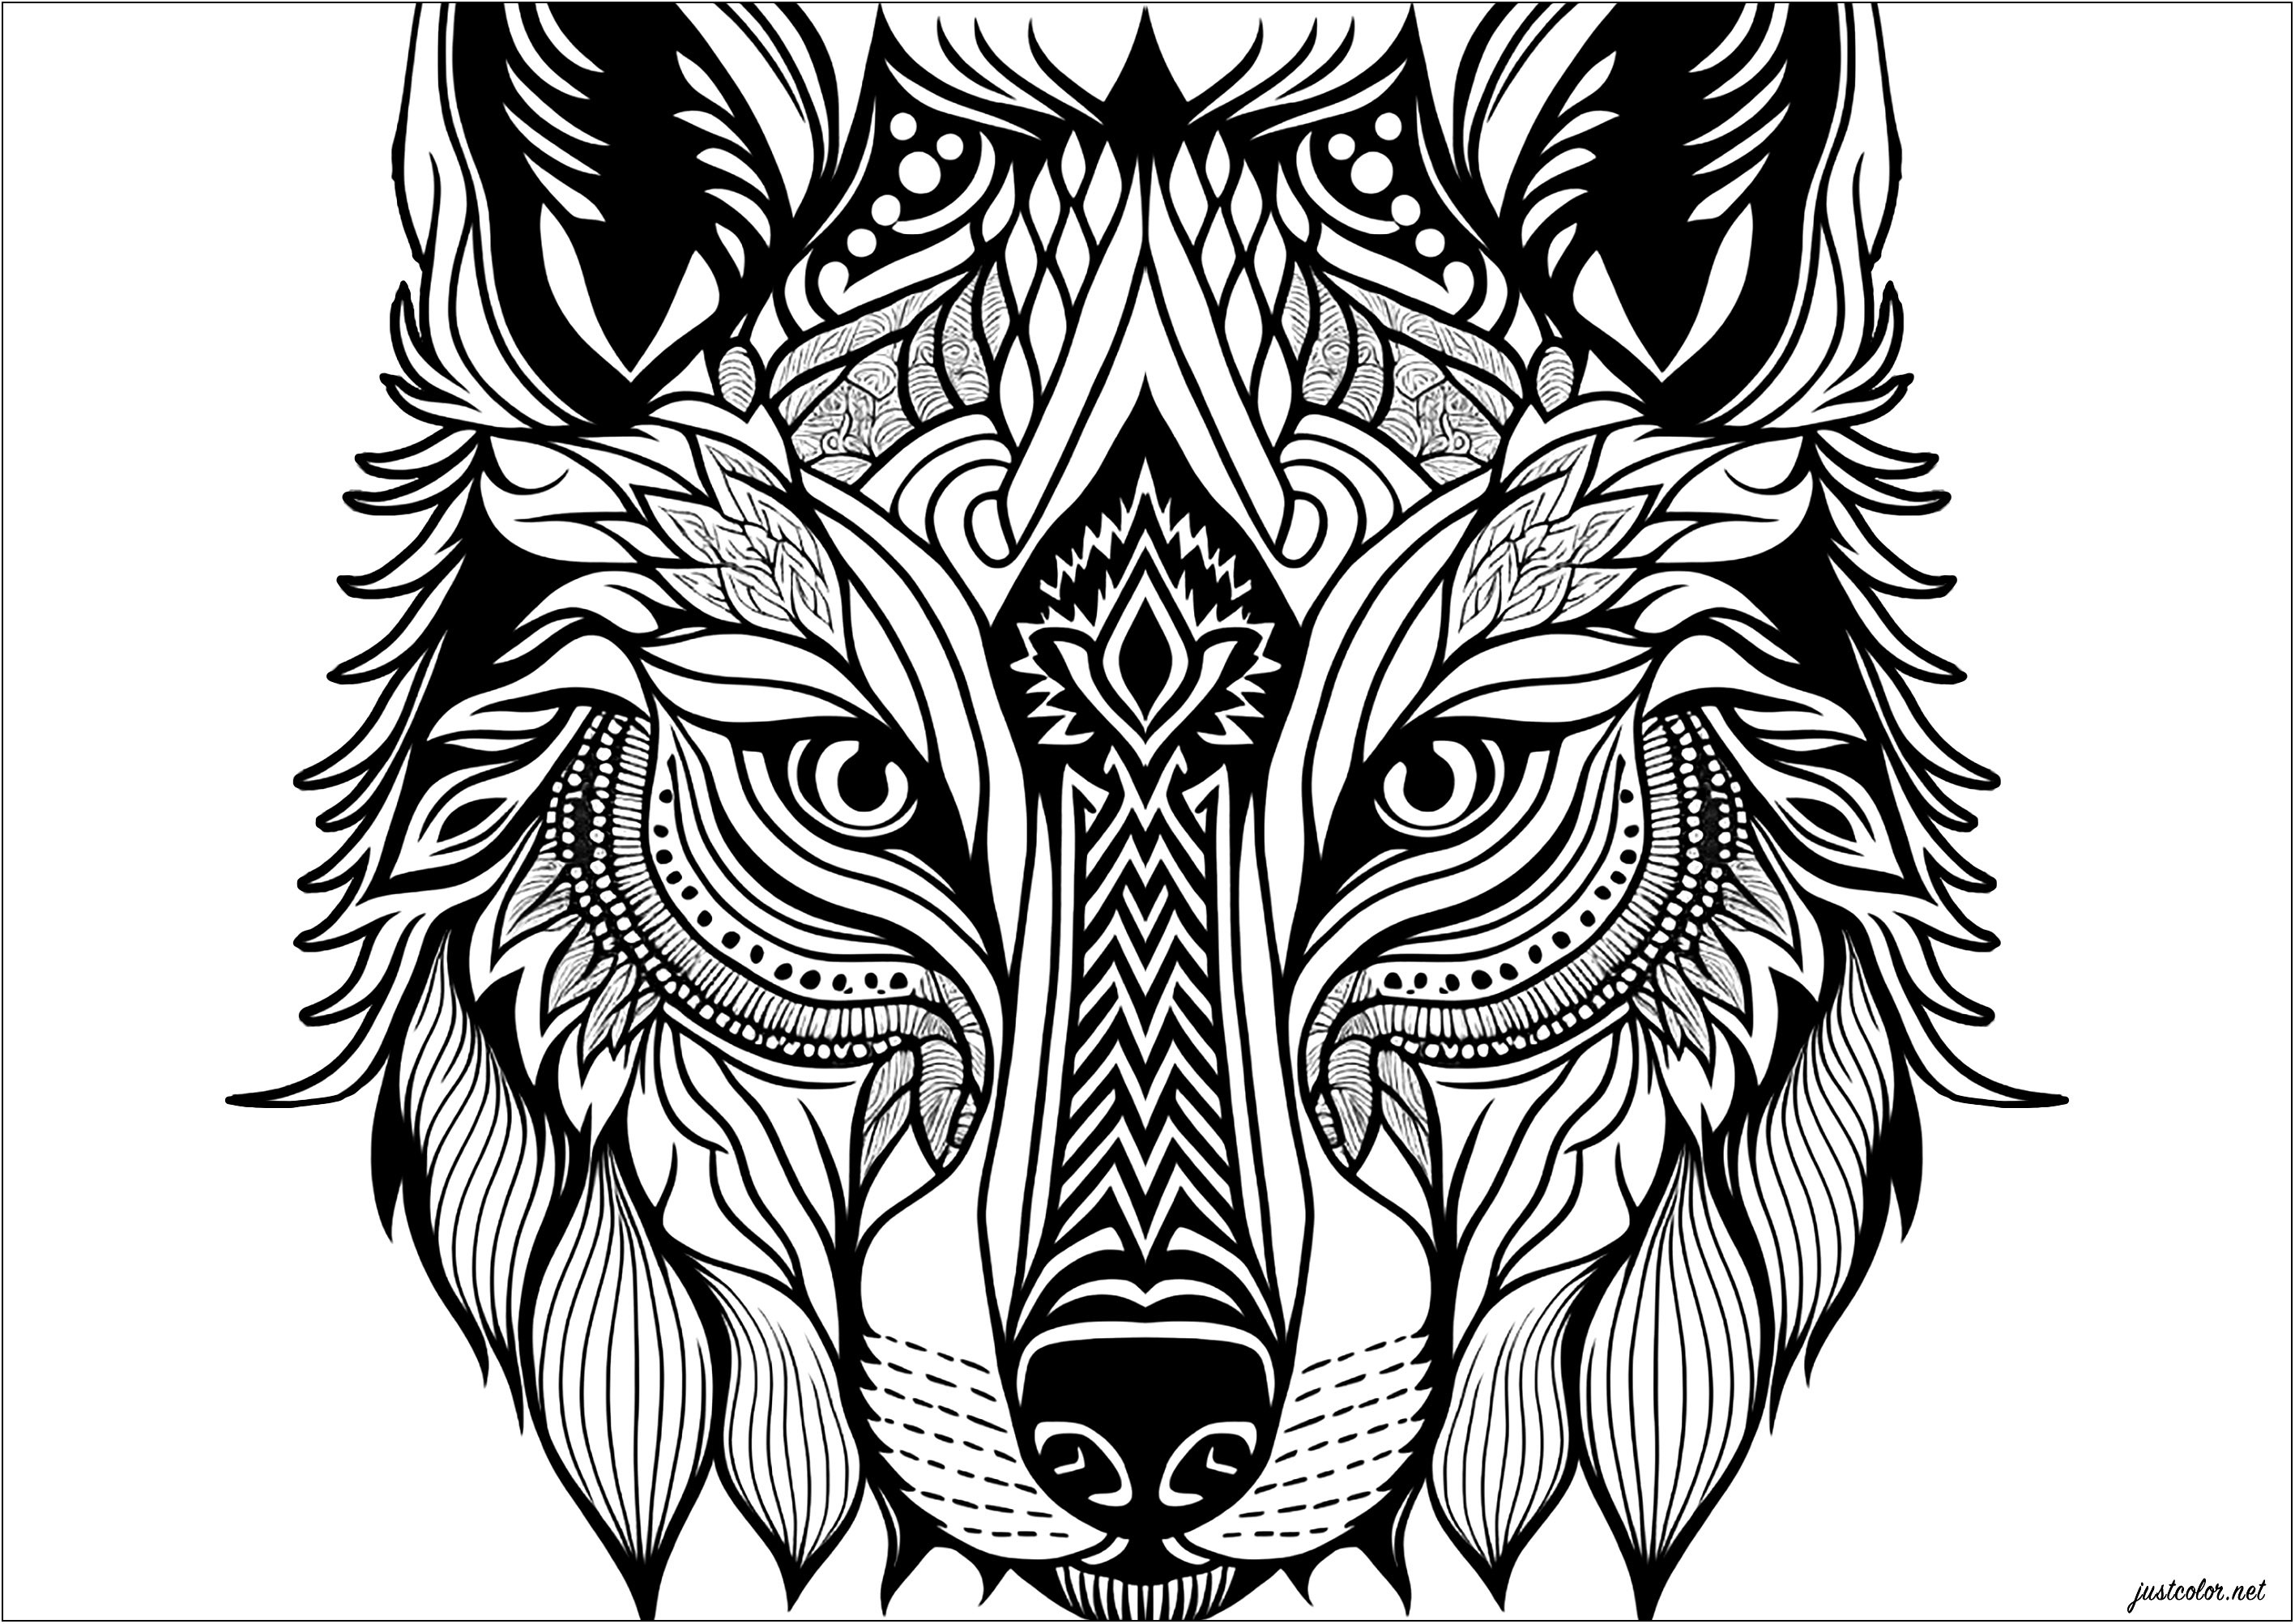 Laissez libre cours à votre imagination avec ce superbe coloriage représentant une tête de loup. Cette illustration présente des motifs abstraits et géométriques, créant une œuvre captivante et hypnotisante. À vous de donner vie à ces lignes et formes avec des couleurs vives et audacieuses, donnant à la tête de loup une allure unique et colorée.